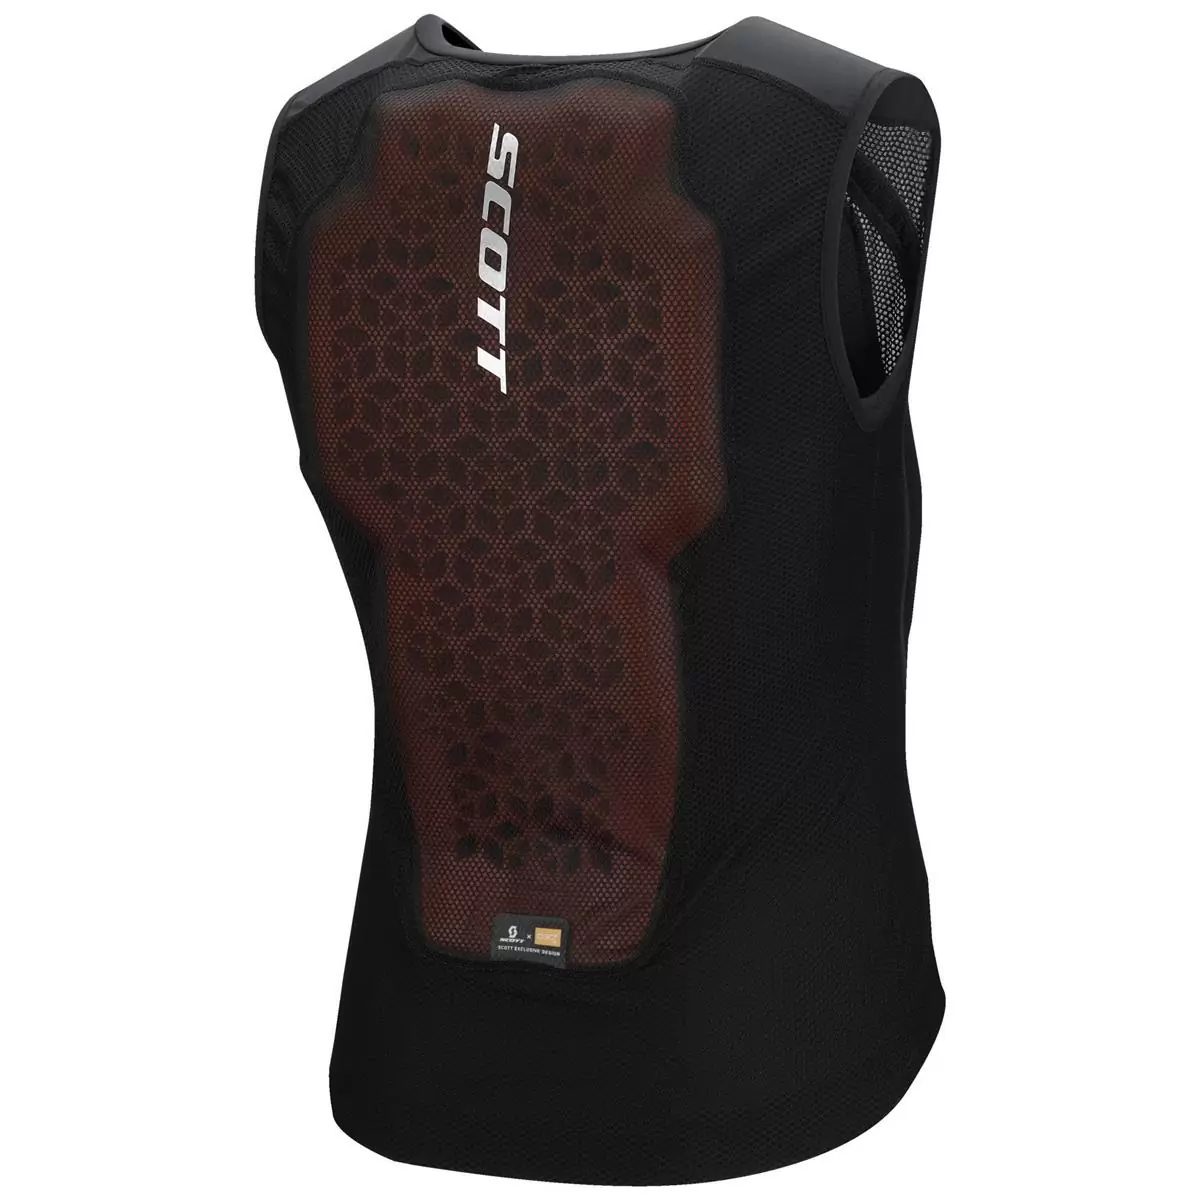 Vest Protector Softcon Hybrid Pro Protective Vest Black Size S #1